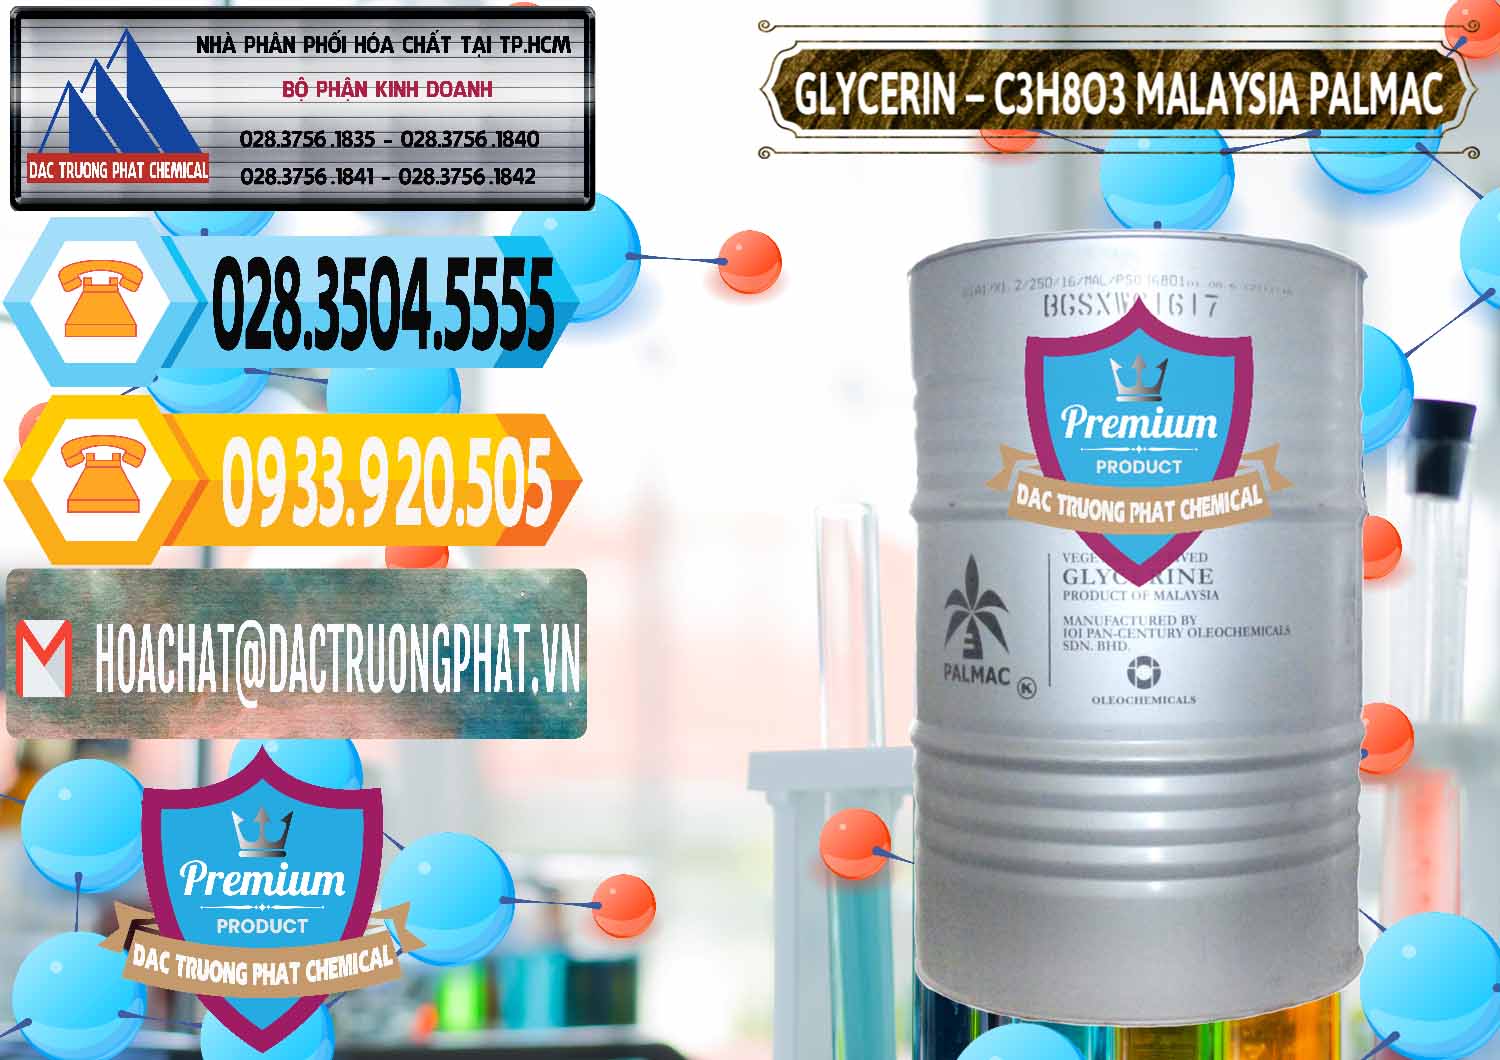 Nơi chuyên cung cấp - bán Glycerin – C3H8O3 99.7% Malaysia Palmac - 0067 - Cty chuyên cung cấp _ kinh doanh hóa chất tại TP.HCM - hoachattayrua.net